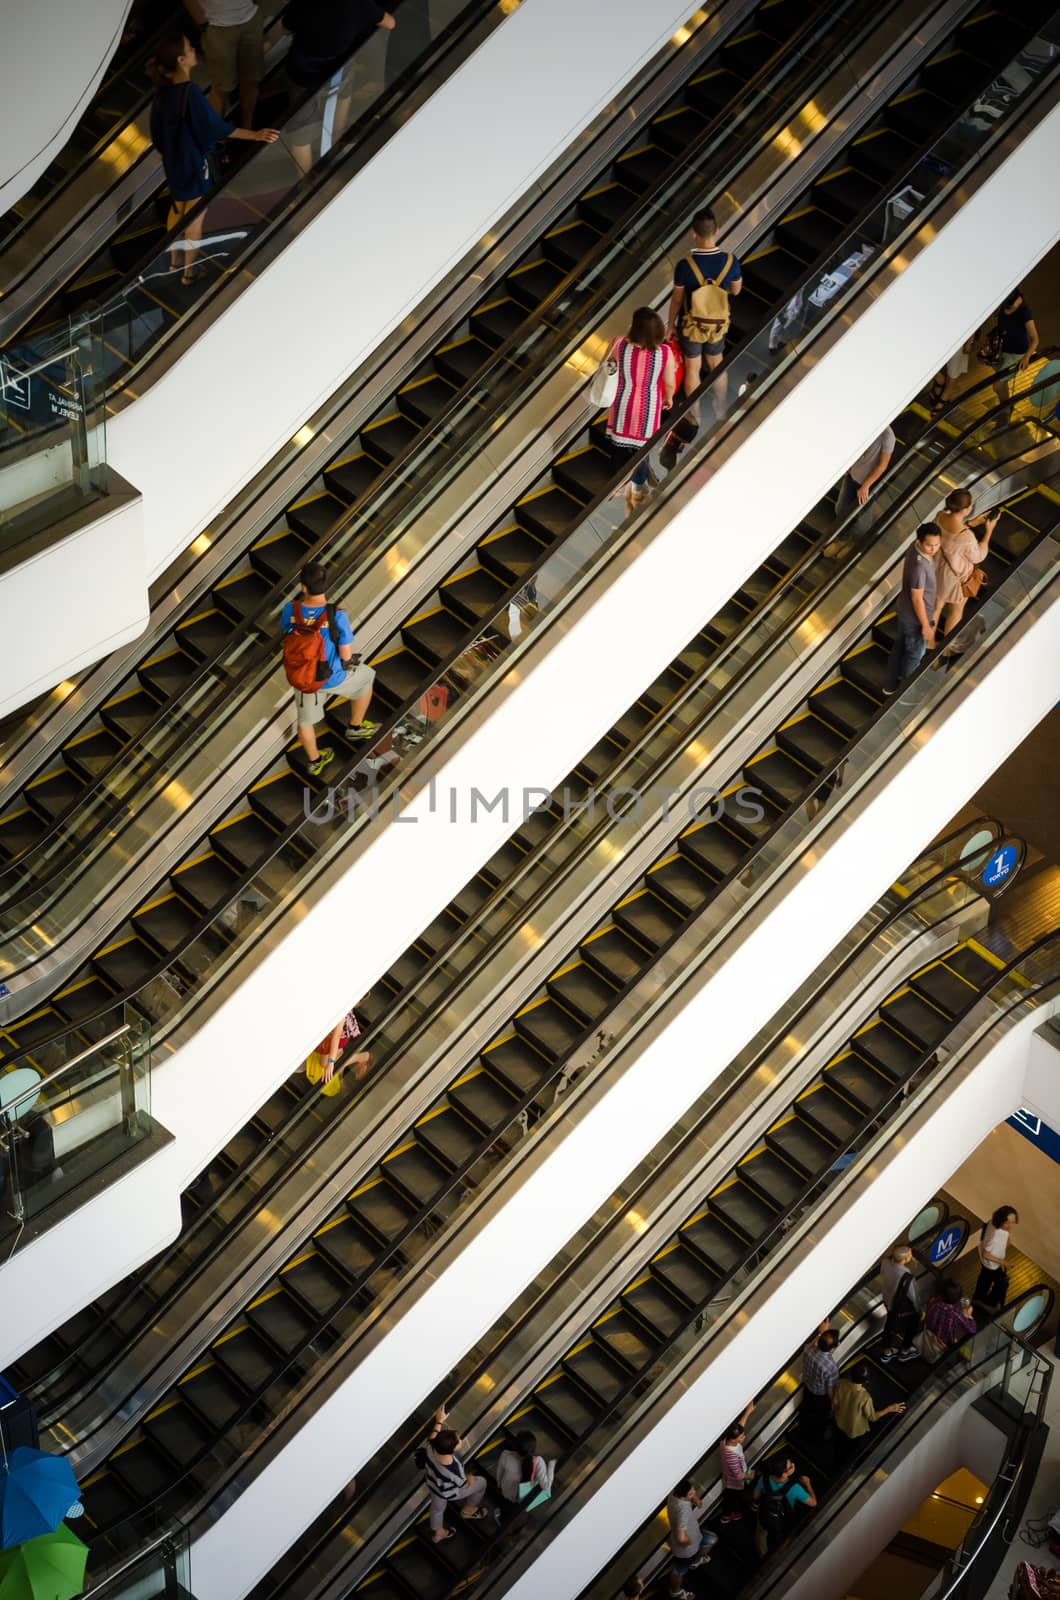 Bangkok, Thailand - September 12, 2013: Crowd on escalator at Terminal21 shopping mall by siraanamwong